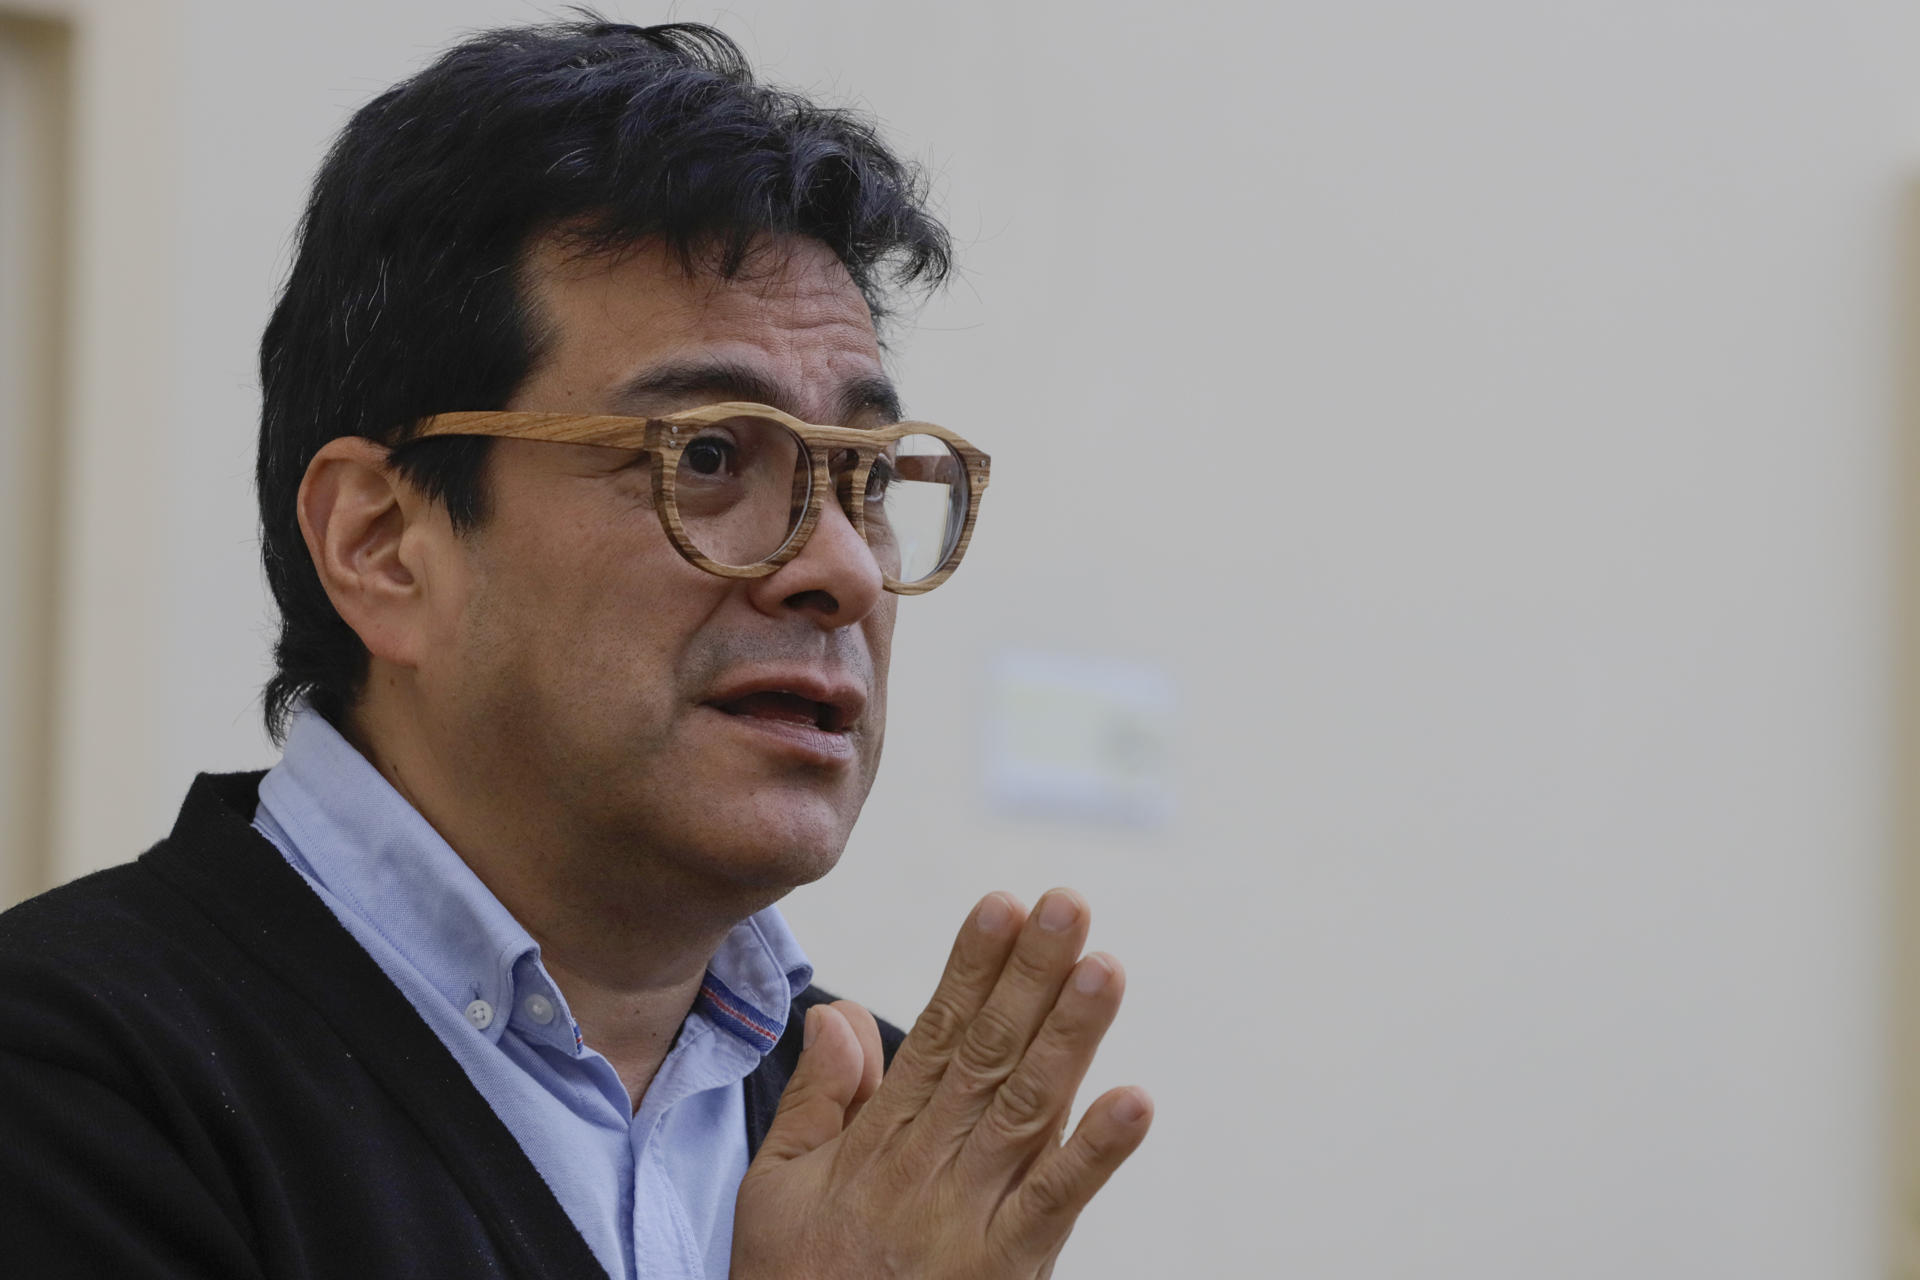 El alto comisionado para la paz en Colombia, Danilo Rueda, fue registrado este miércoles, 15 de marzo, durante una entrevista con EFE, en Bogotá (Colombia). EFE/Carlos Durán